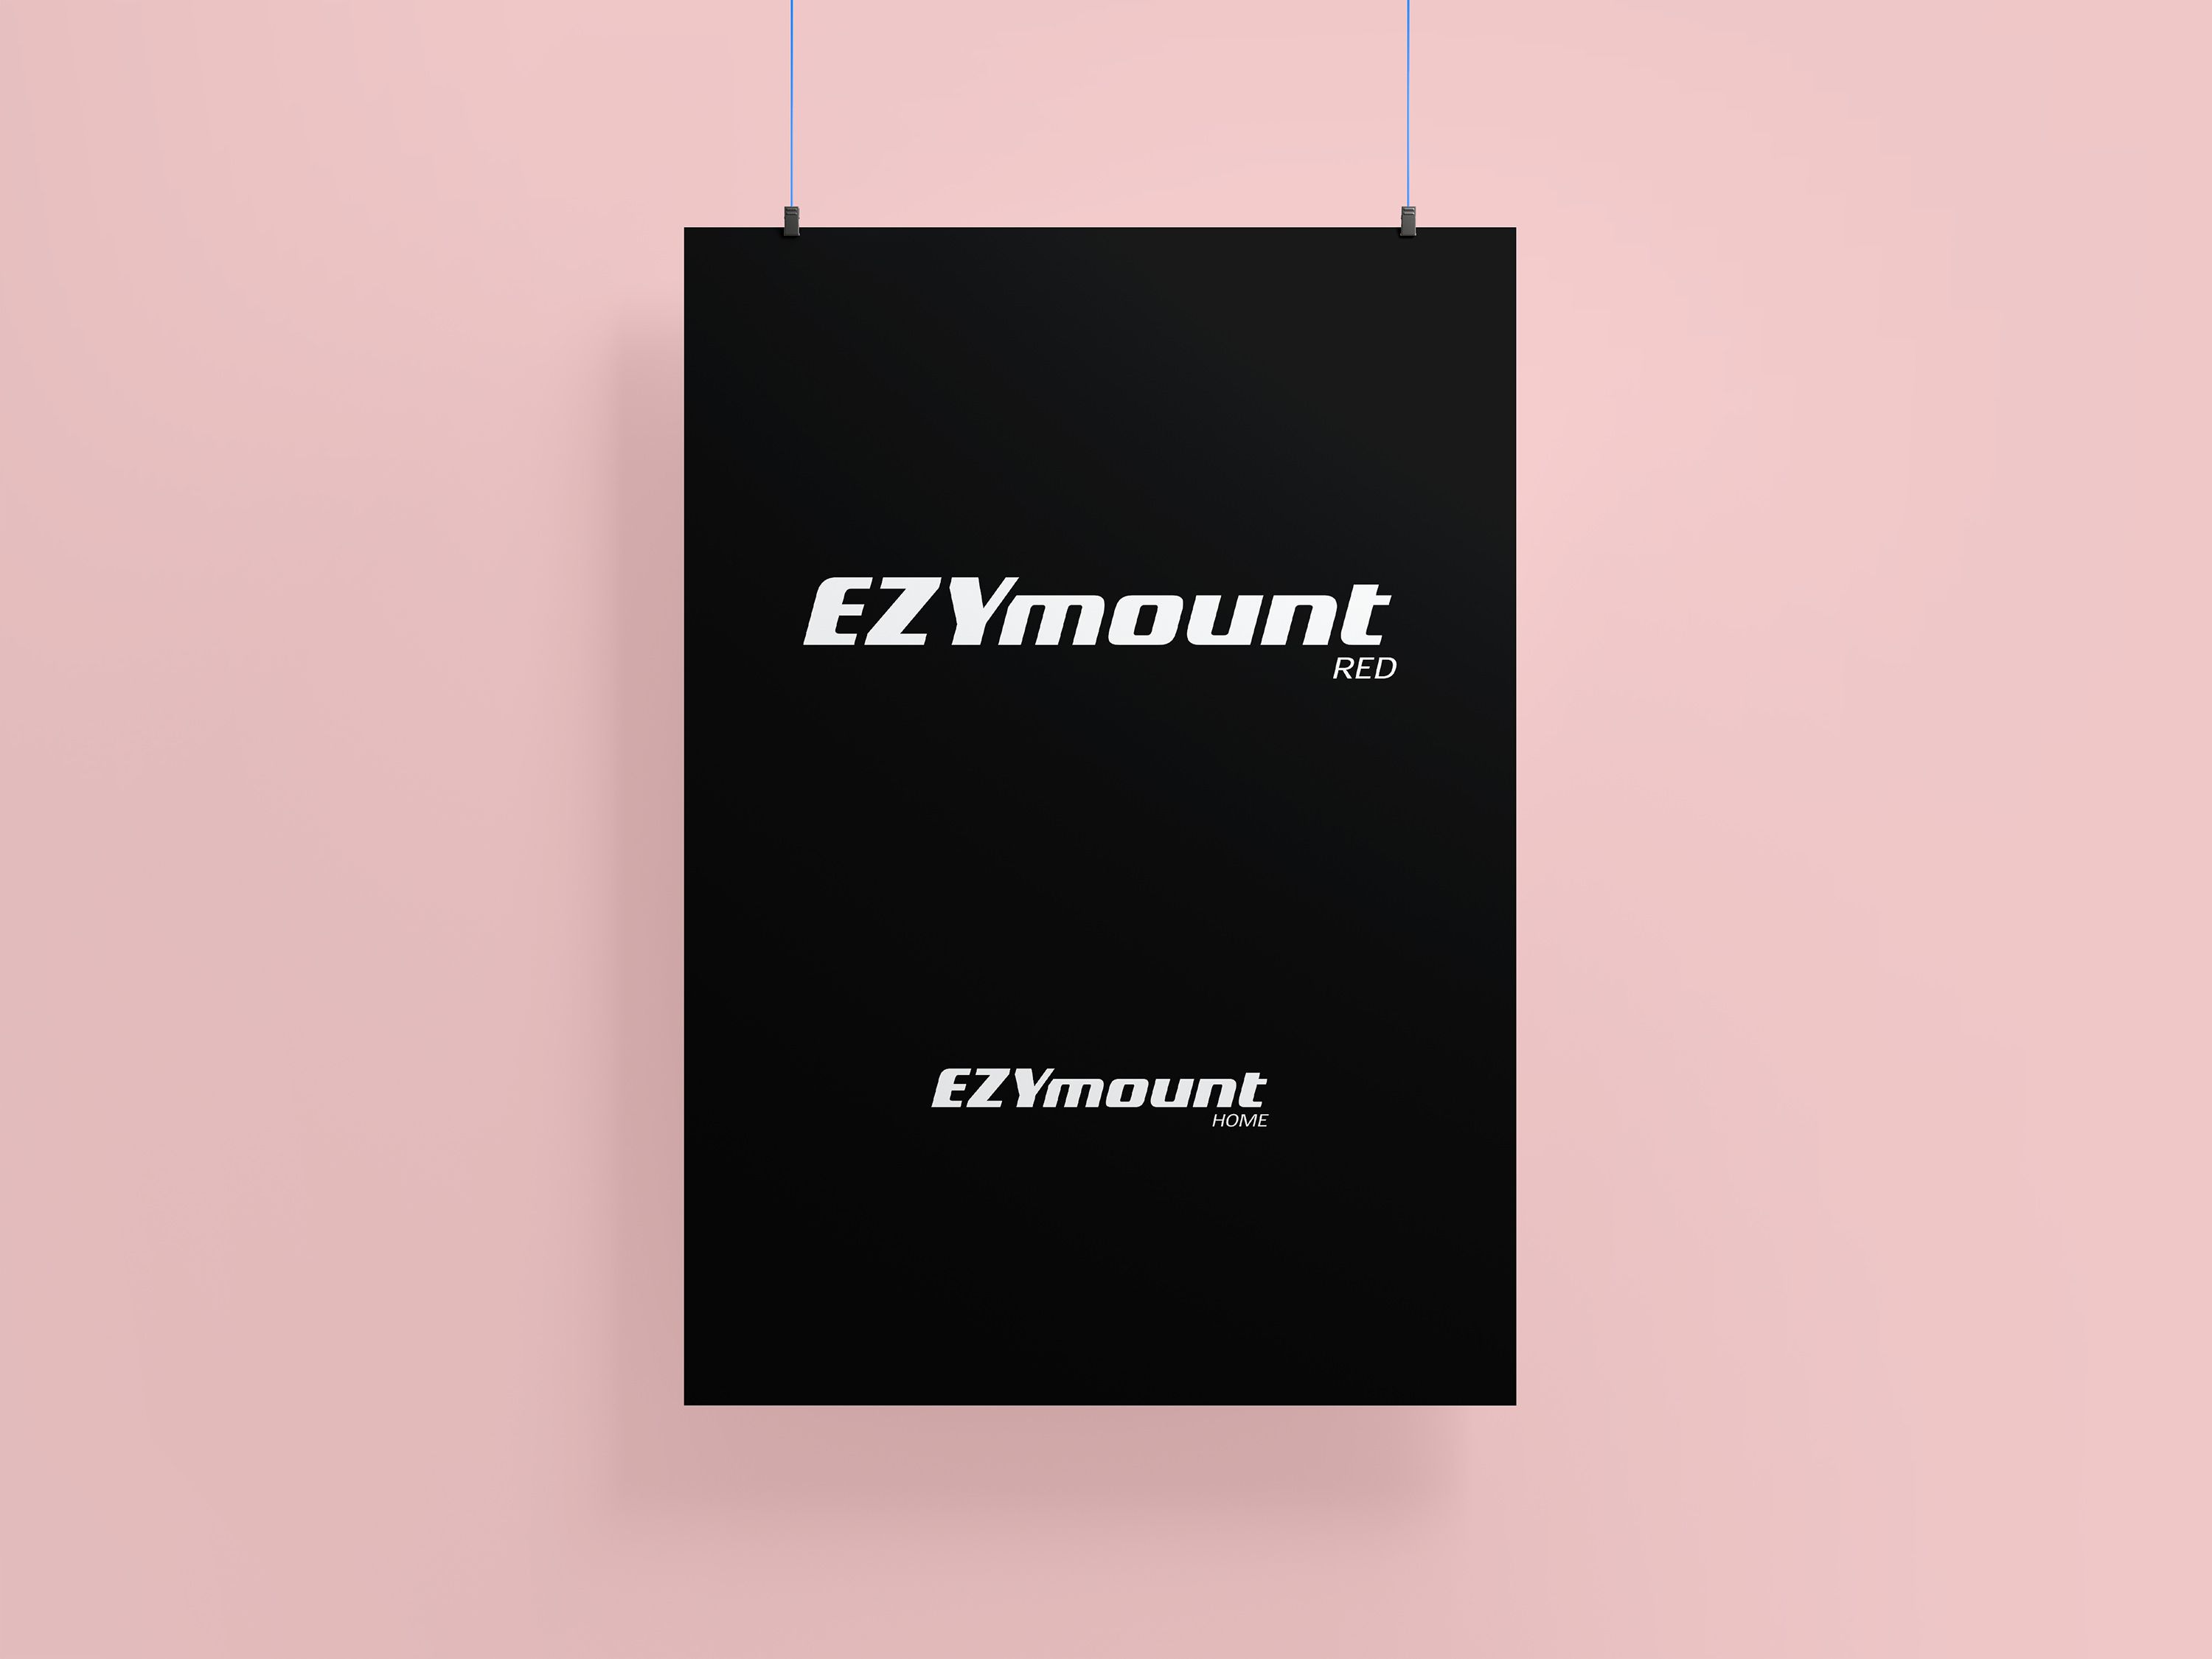 Ezymount white logo version